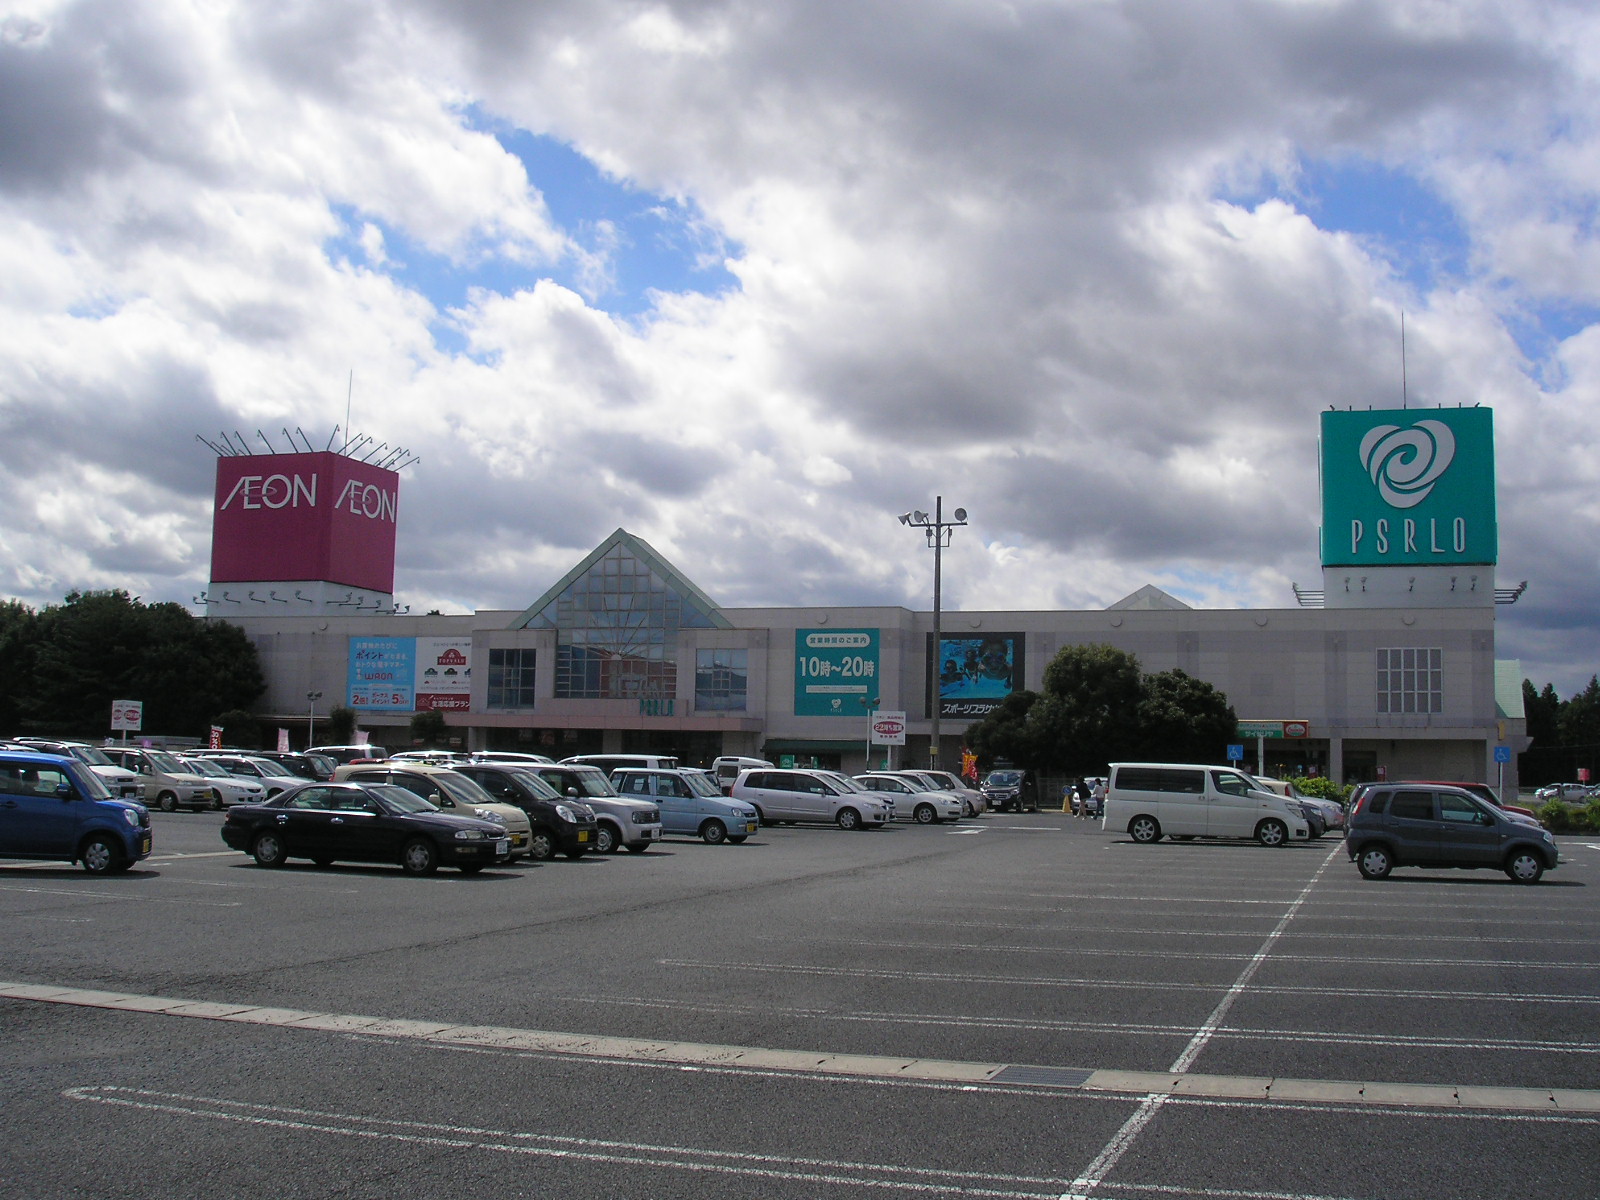 Shopping centre. Hitachi 833m to Omiya shopping center Pizarro (shopping center)